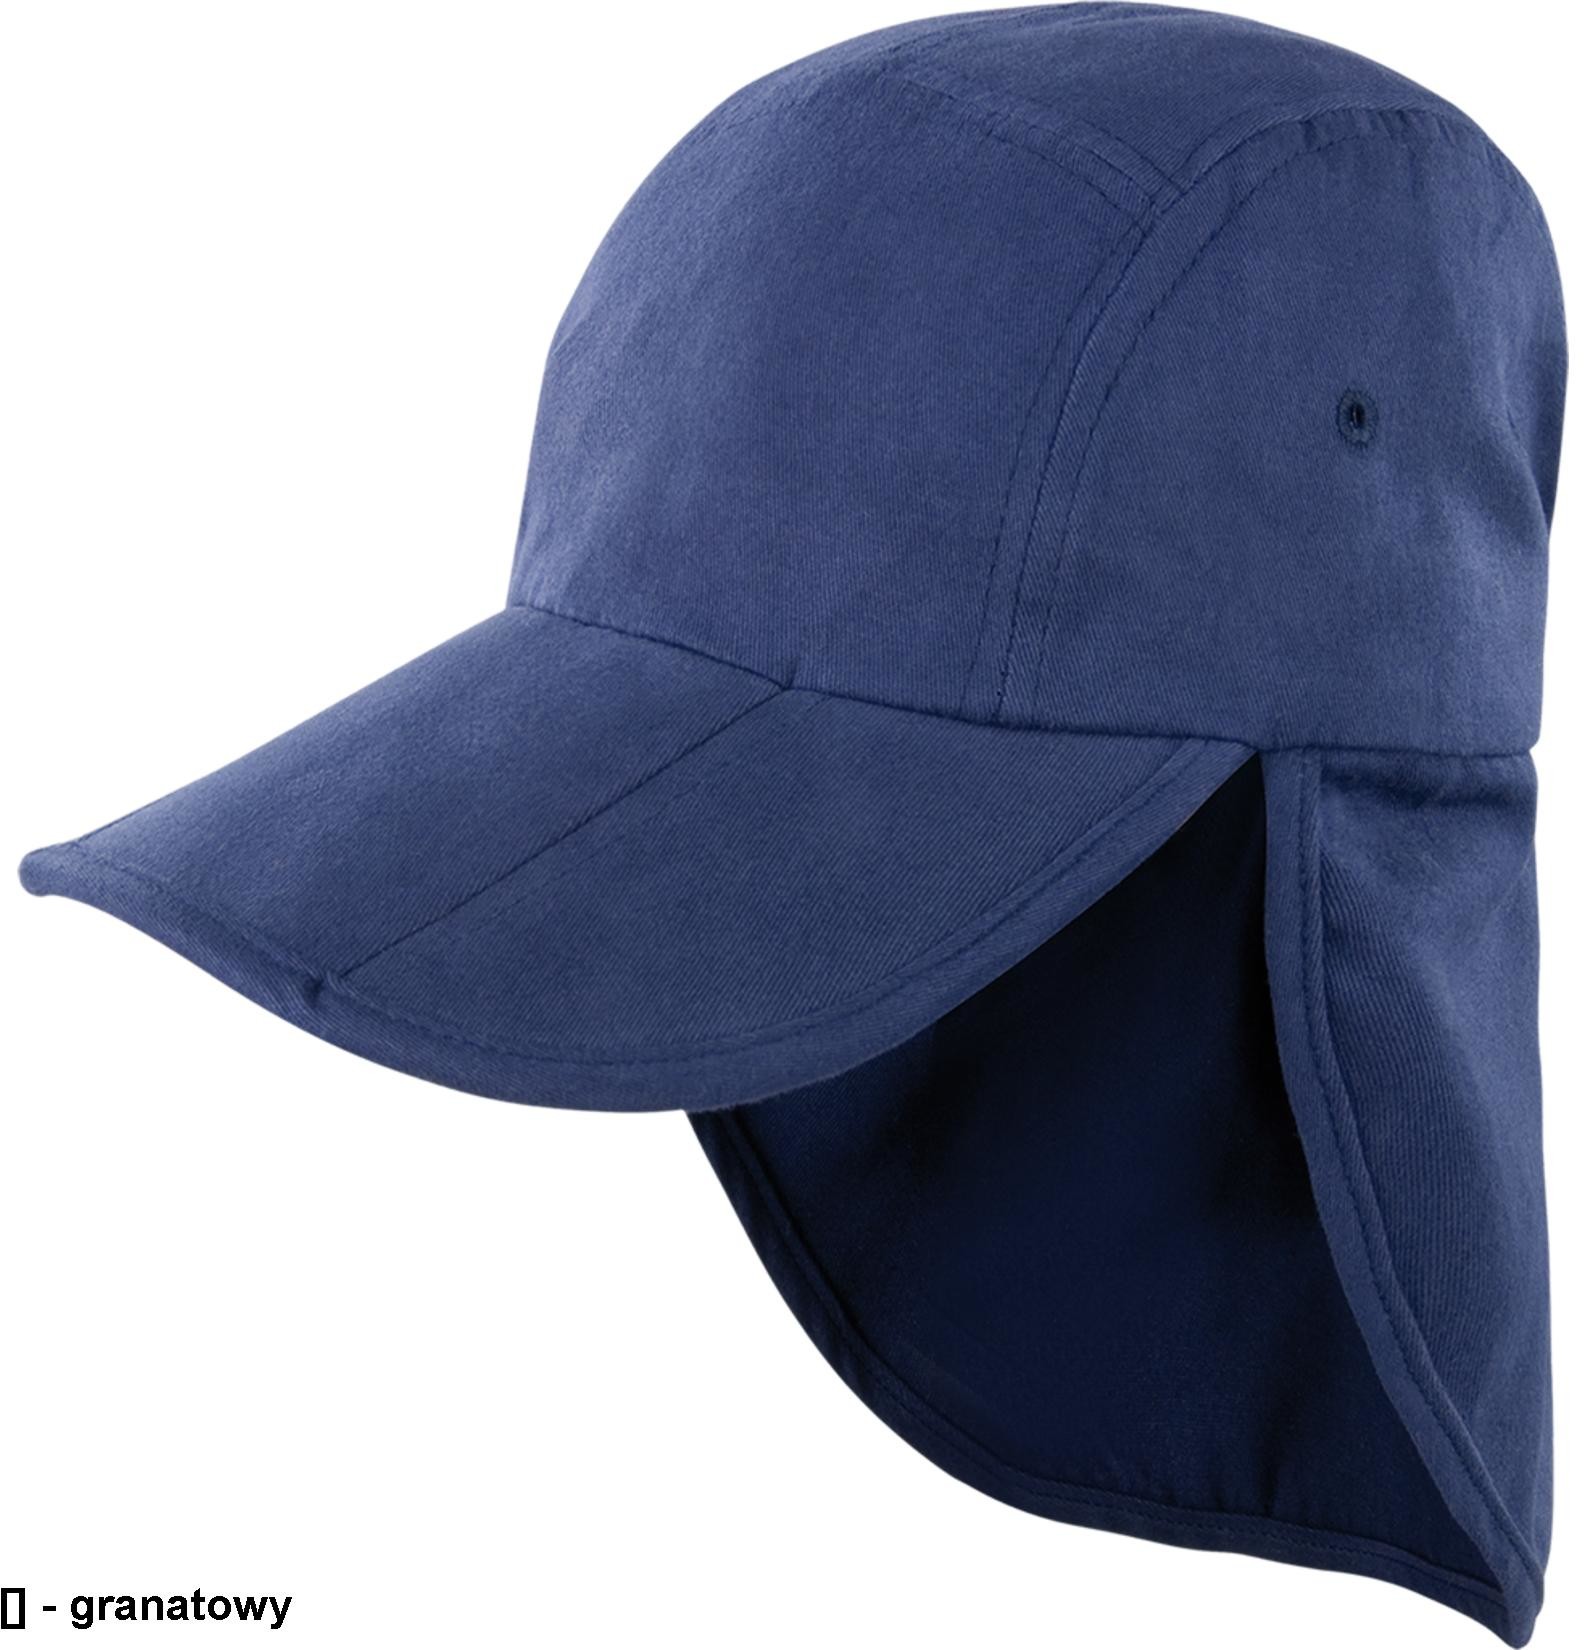 Reis CZBAWNECK - czapka ochronna, otwory wentylacyjne, trzyczęściowy składany daszek, 100% bawełna 225 g/m - UNI. CZBAWNECK